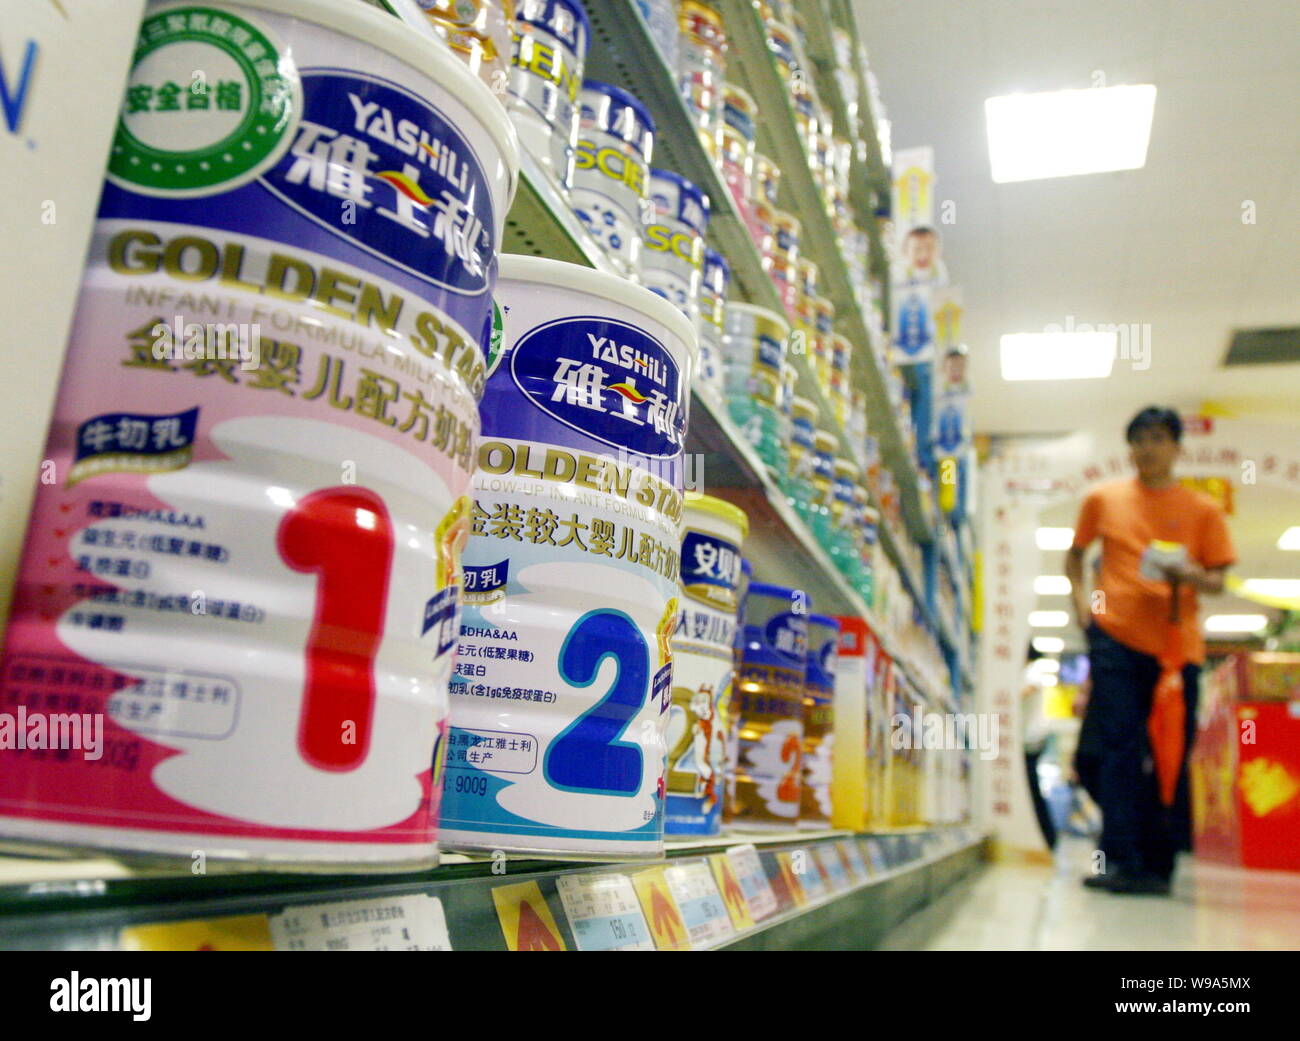 ------ Dosen Yashili Baby Milchpulver sind für den Verkauf in einem Supermarkt in Shanghai, China, 21. September 2009 gesehen. Chinesischen Festland Milcherzeuger Stockfoto